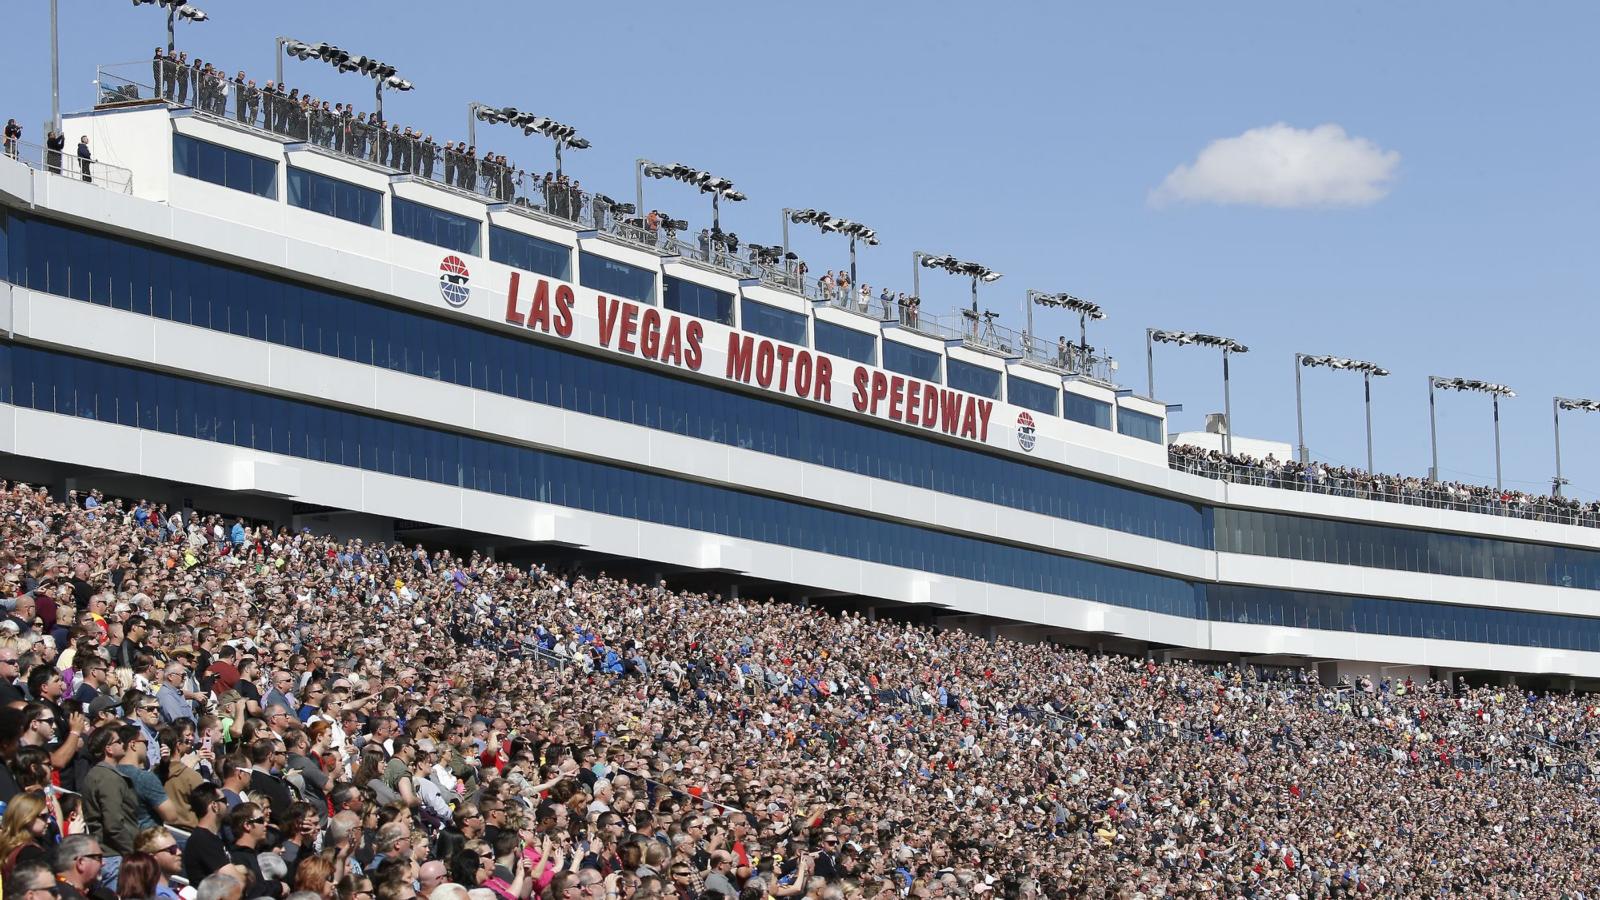 Fan Info. Las Vegas Motor Speedway